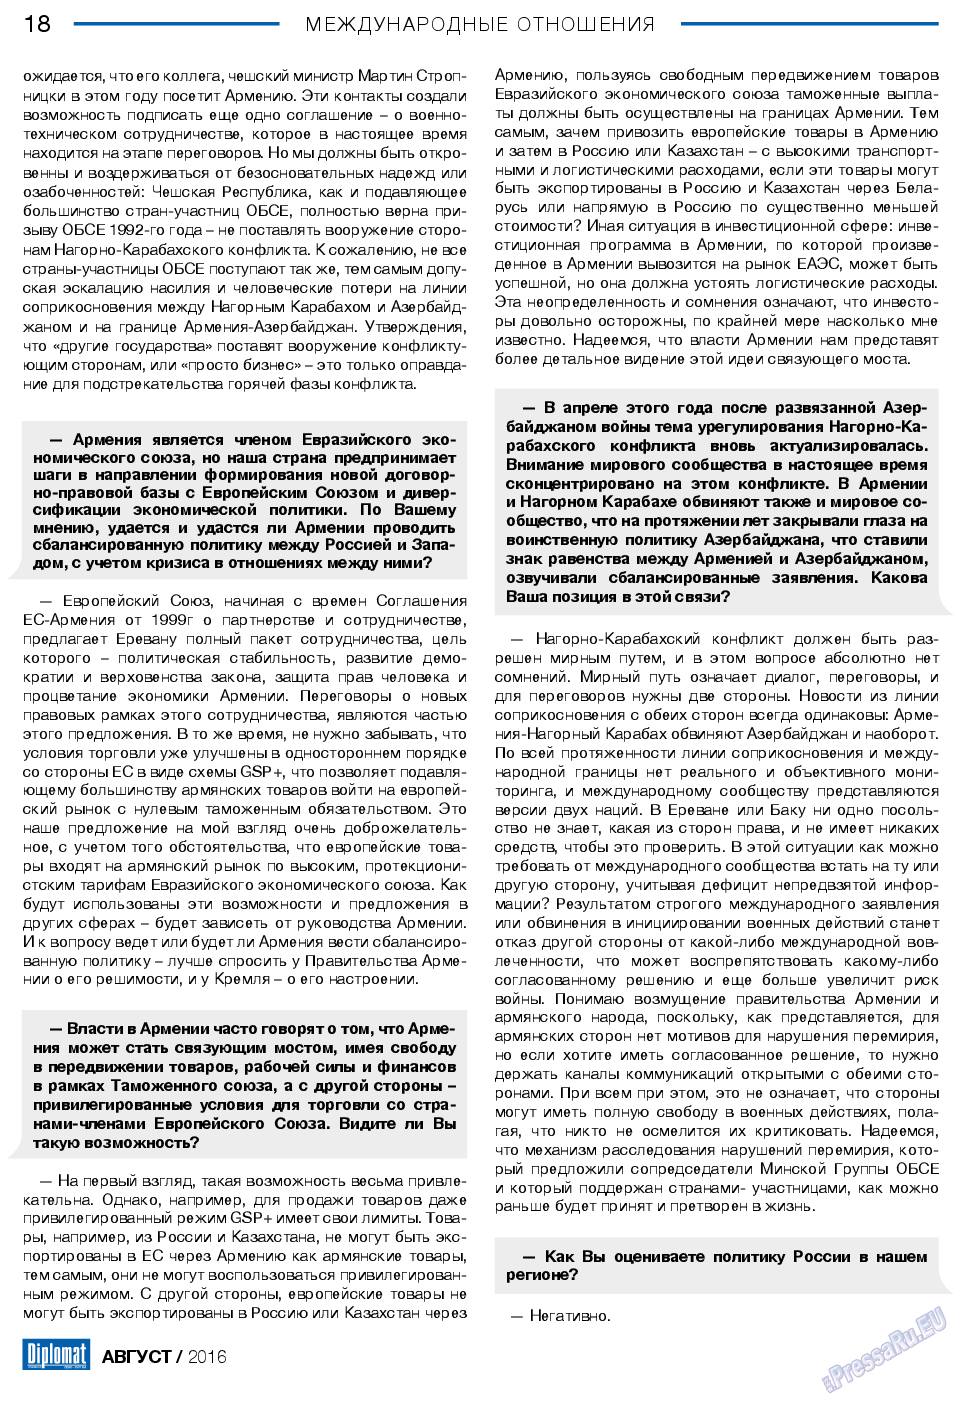 Diplomat, газета. 2016 №83 стр.18